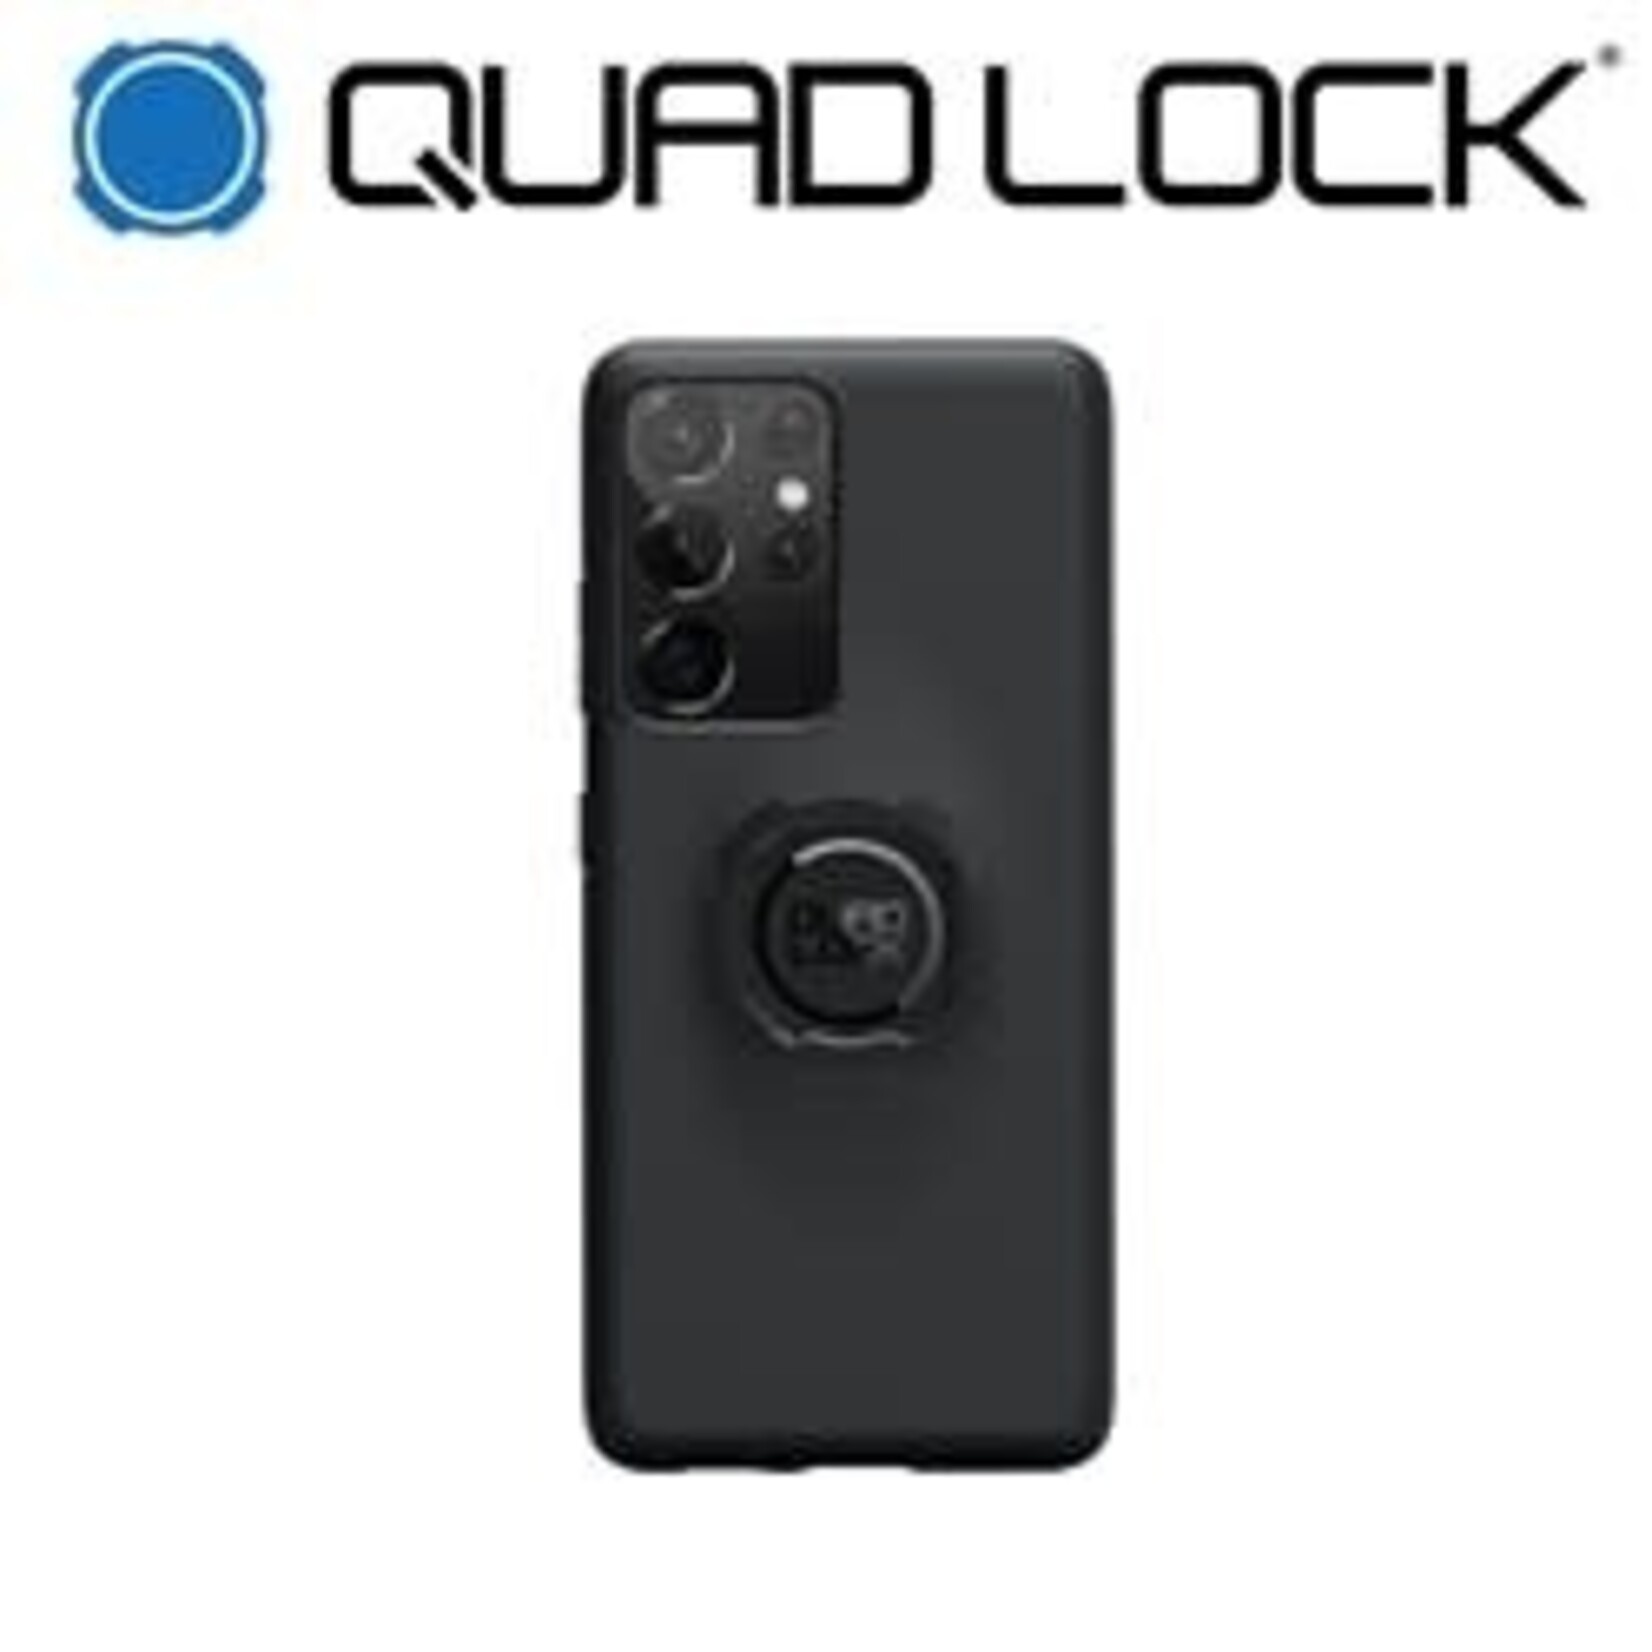 Quad Lock QUADLOCK Samsung Case